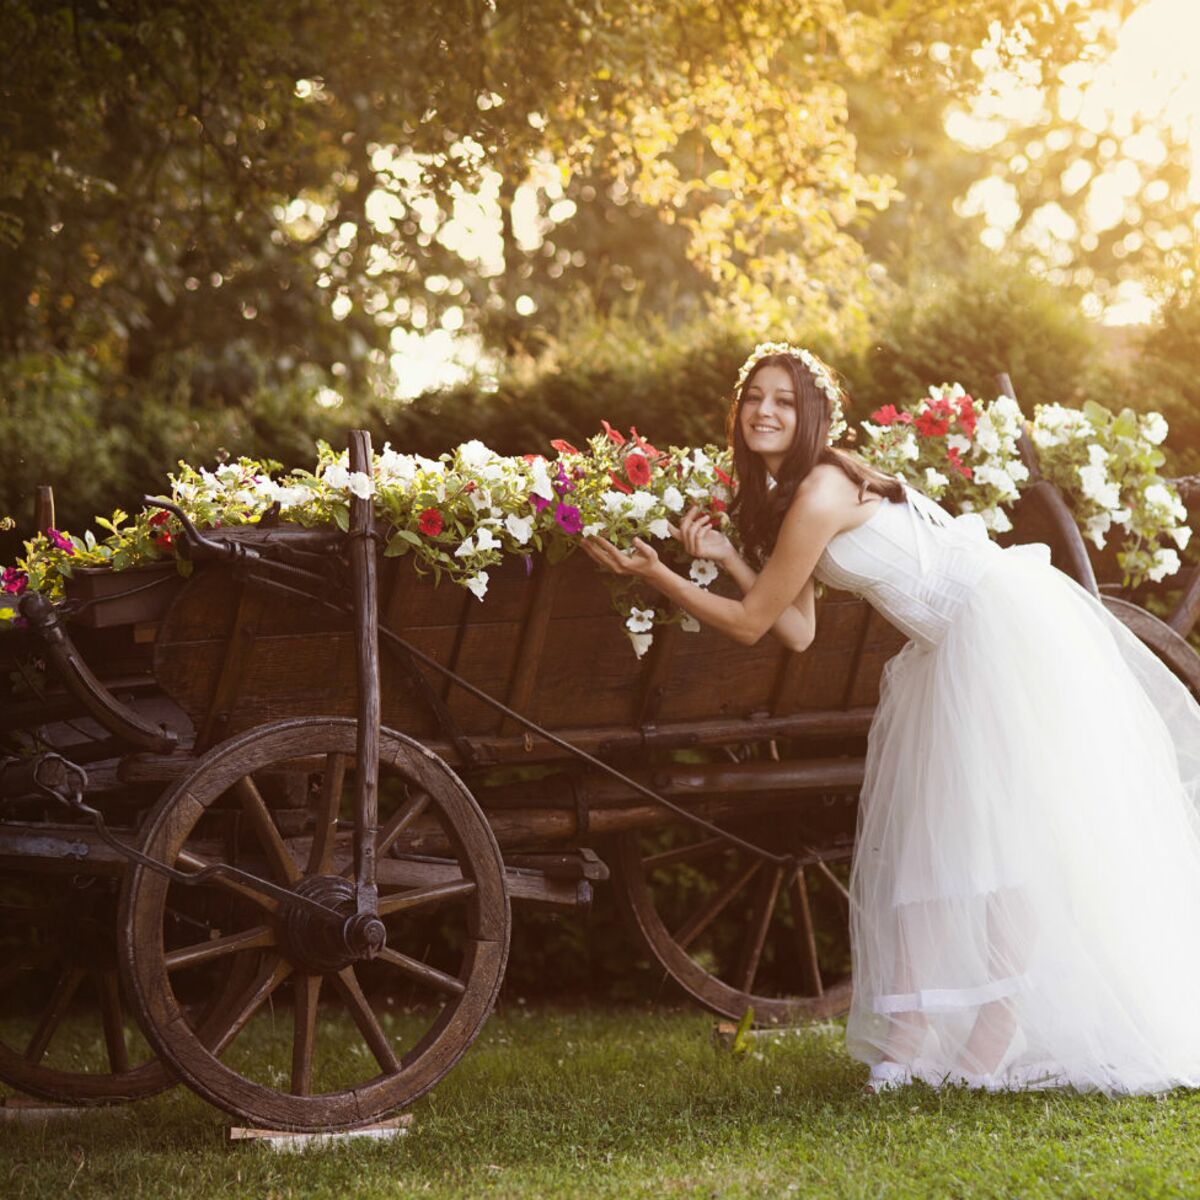 Le mariage champêtre chic – les meilleures tendances mariage